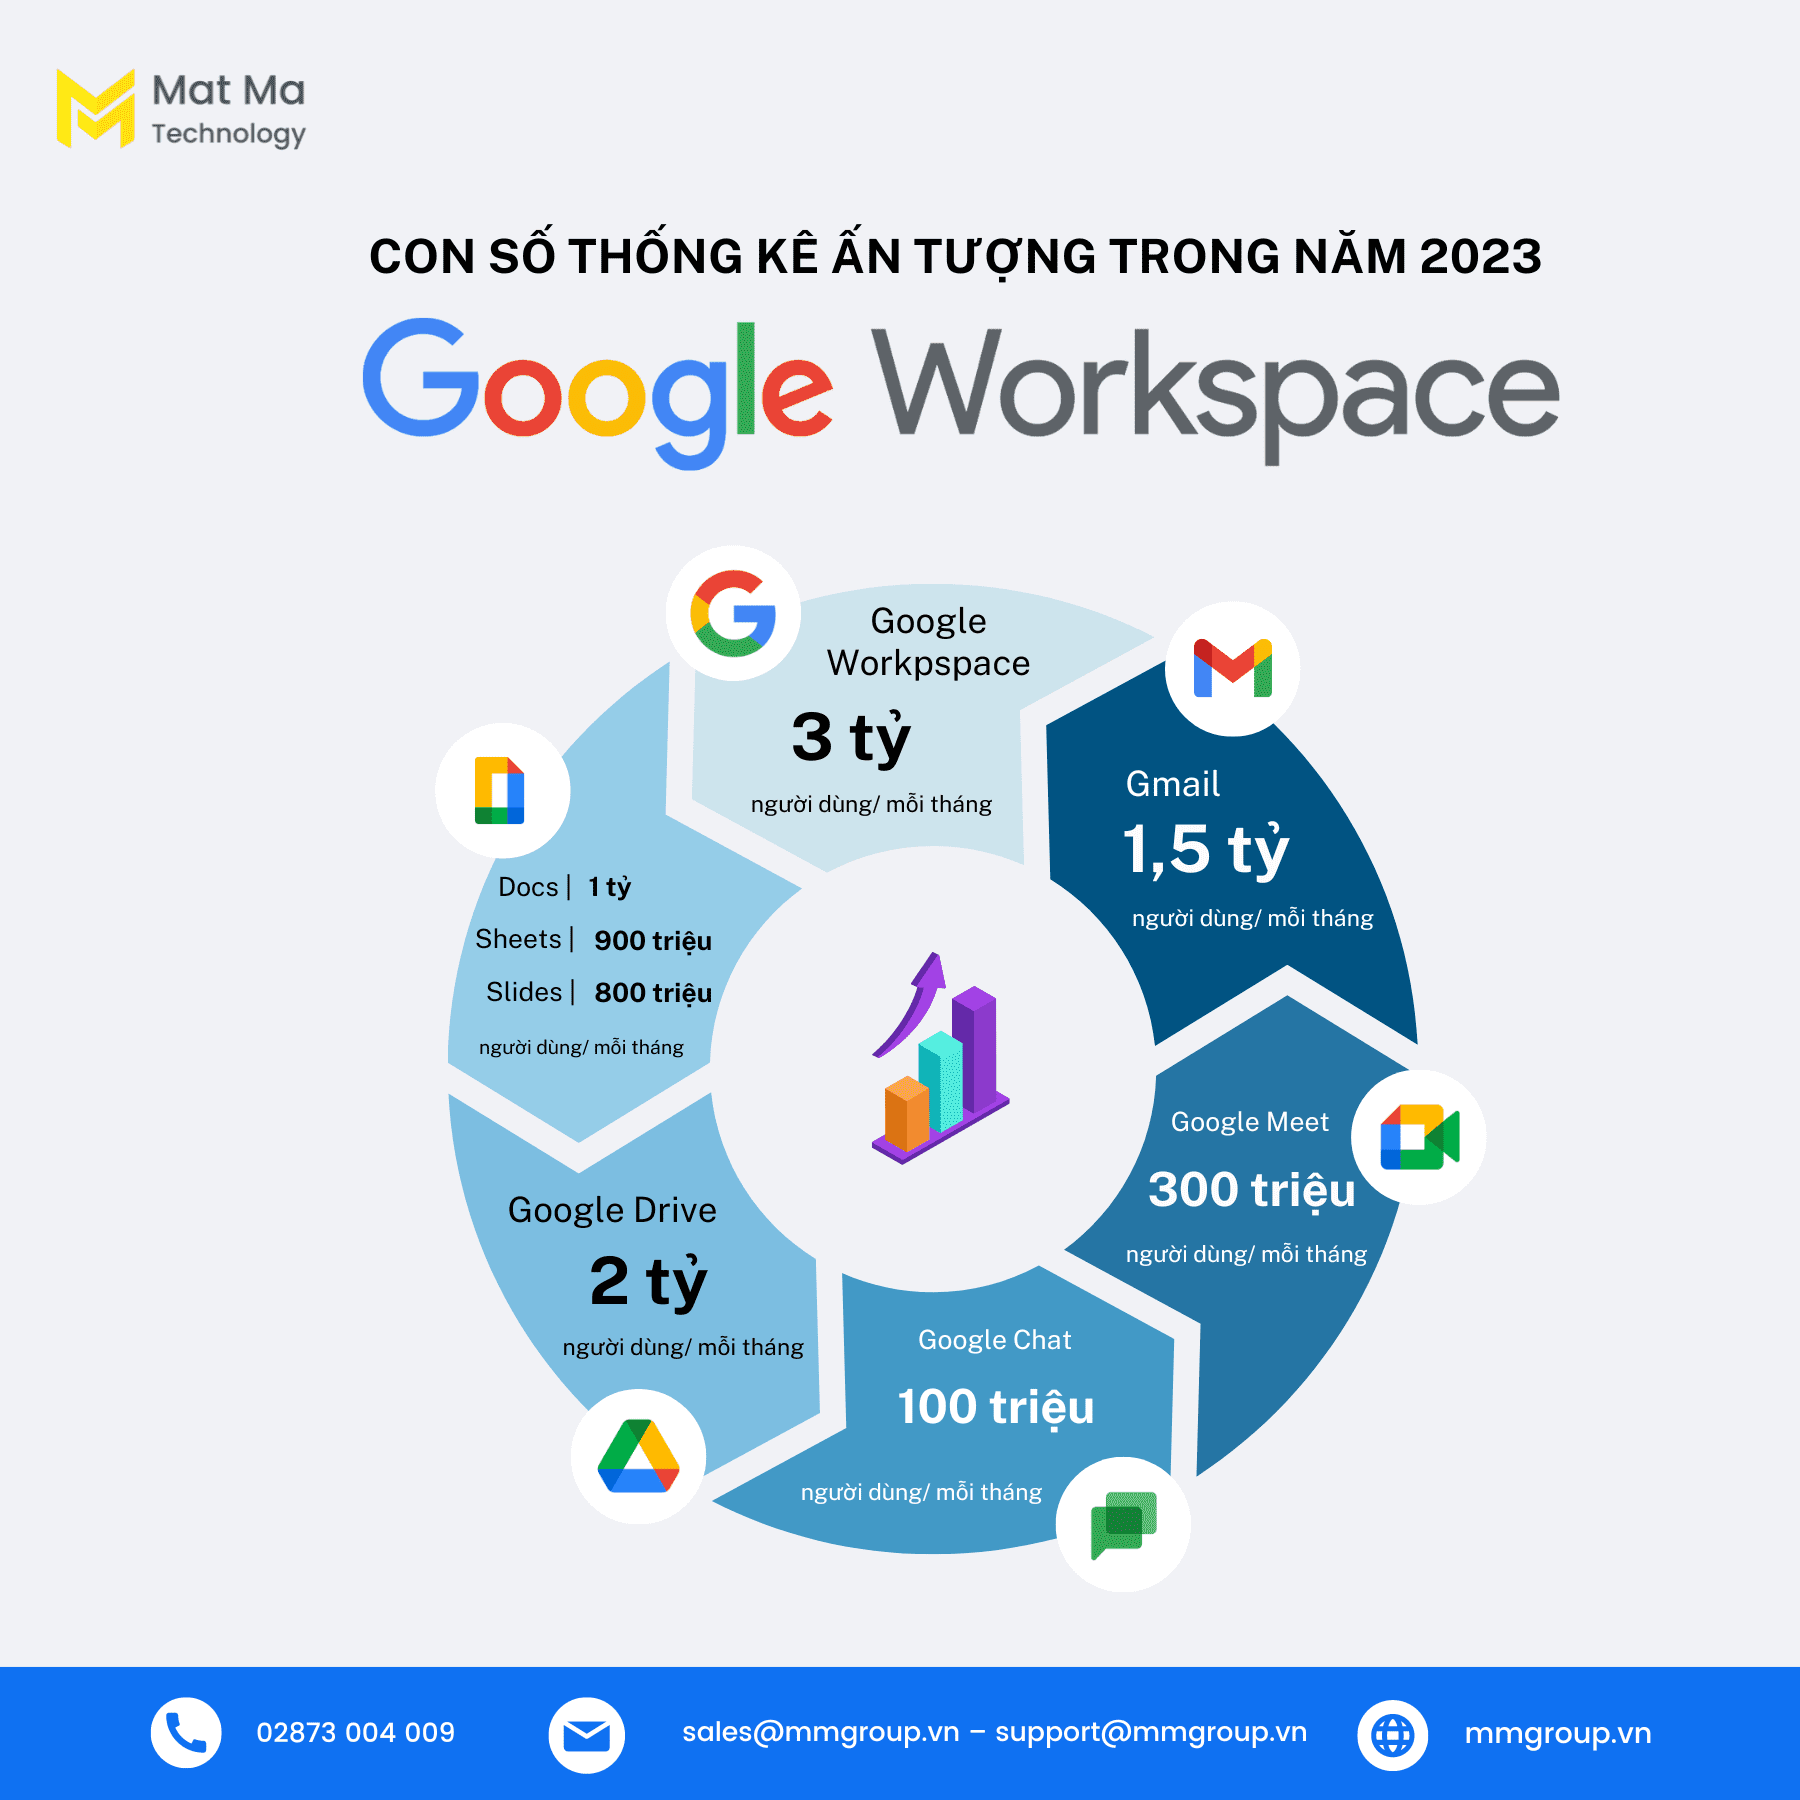 Google Workspace đạt 3 tỷ người dùng năm 2023